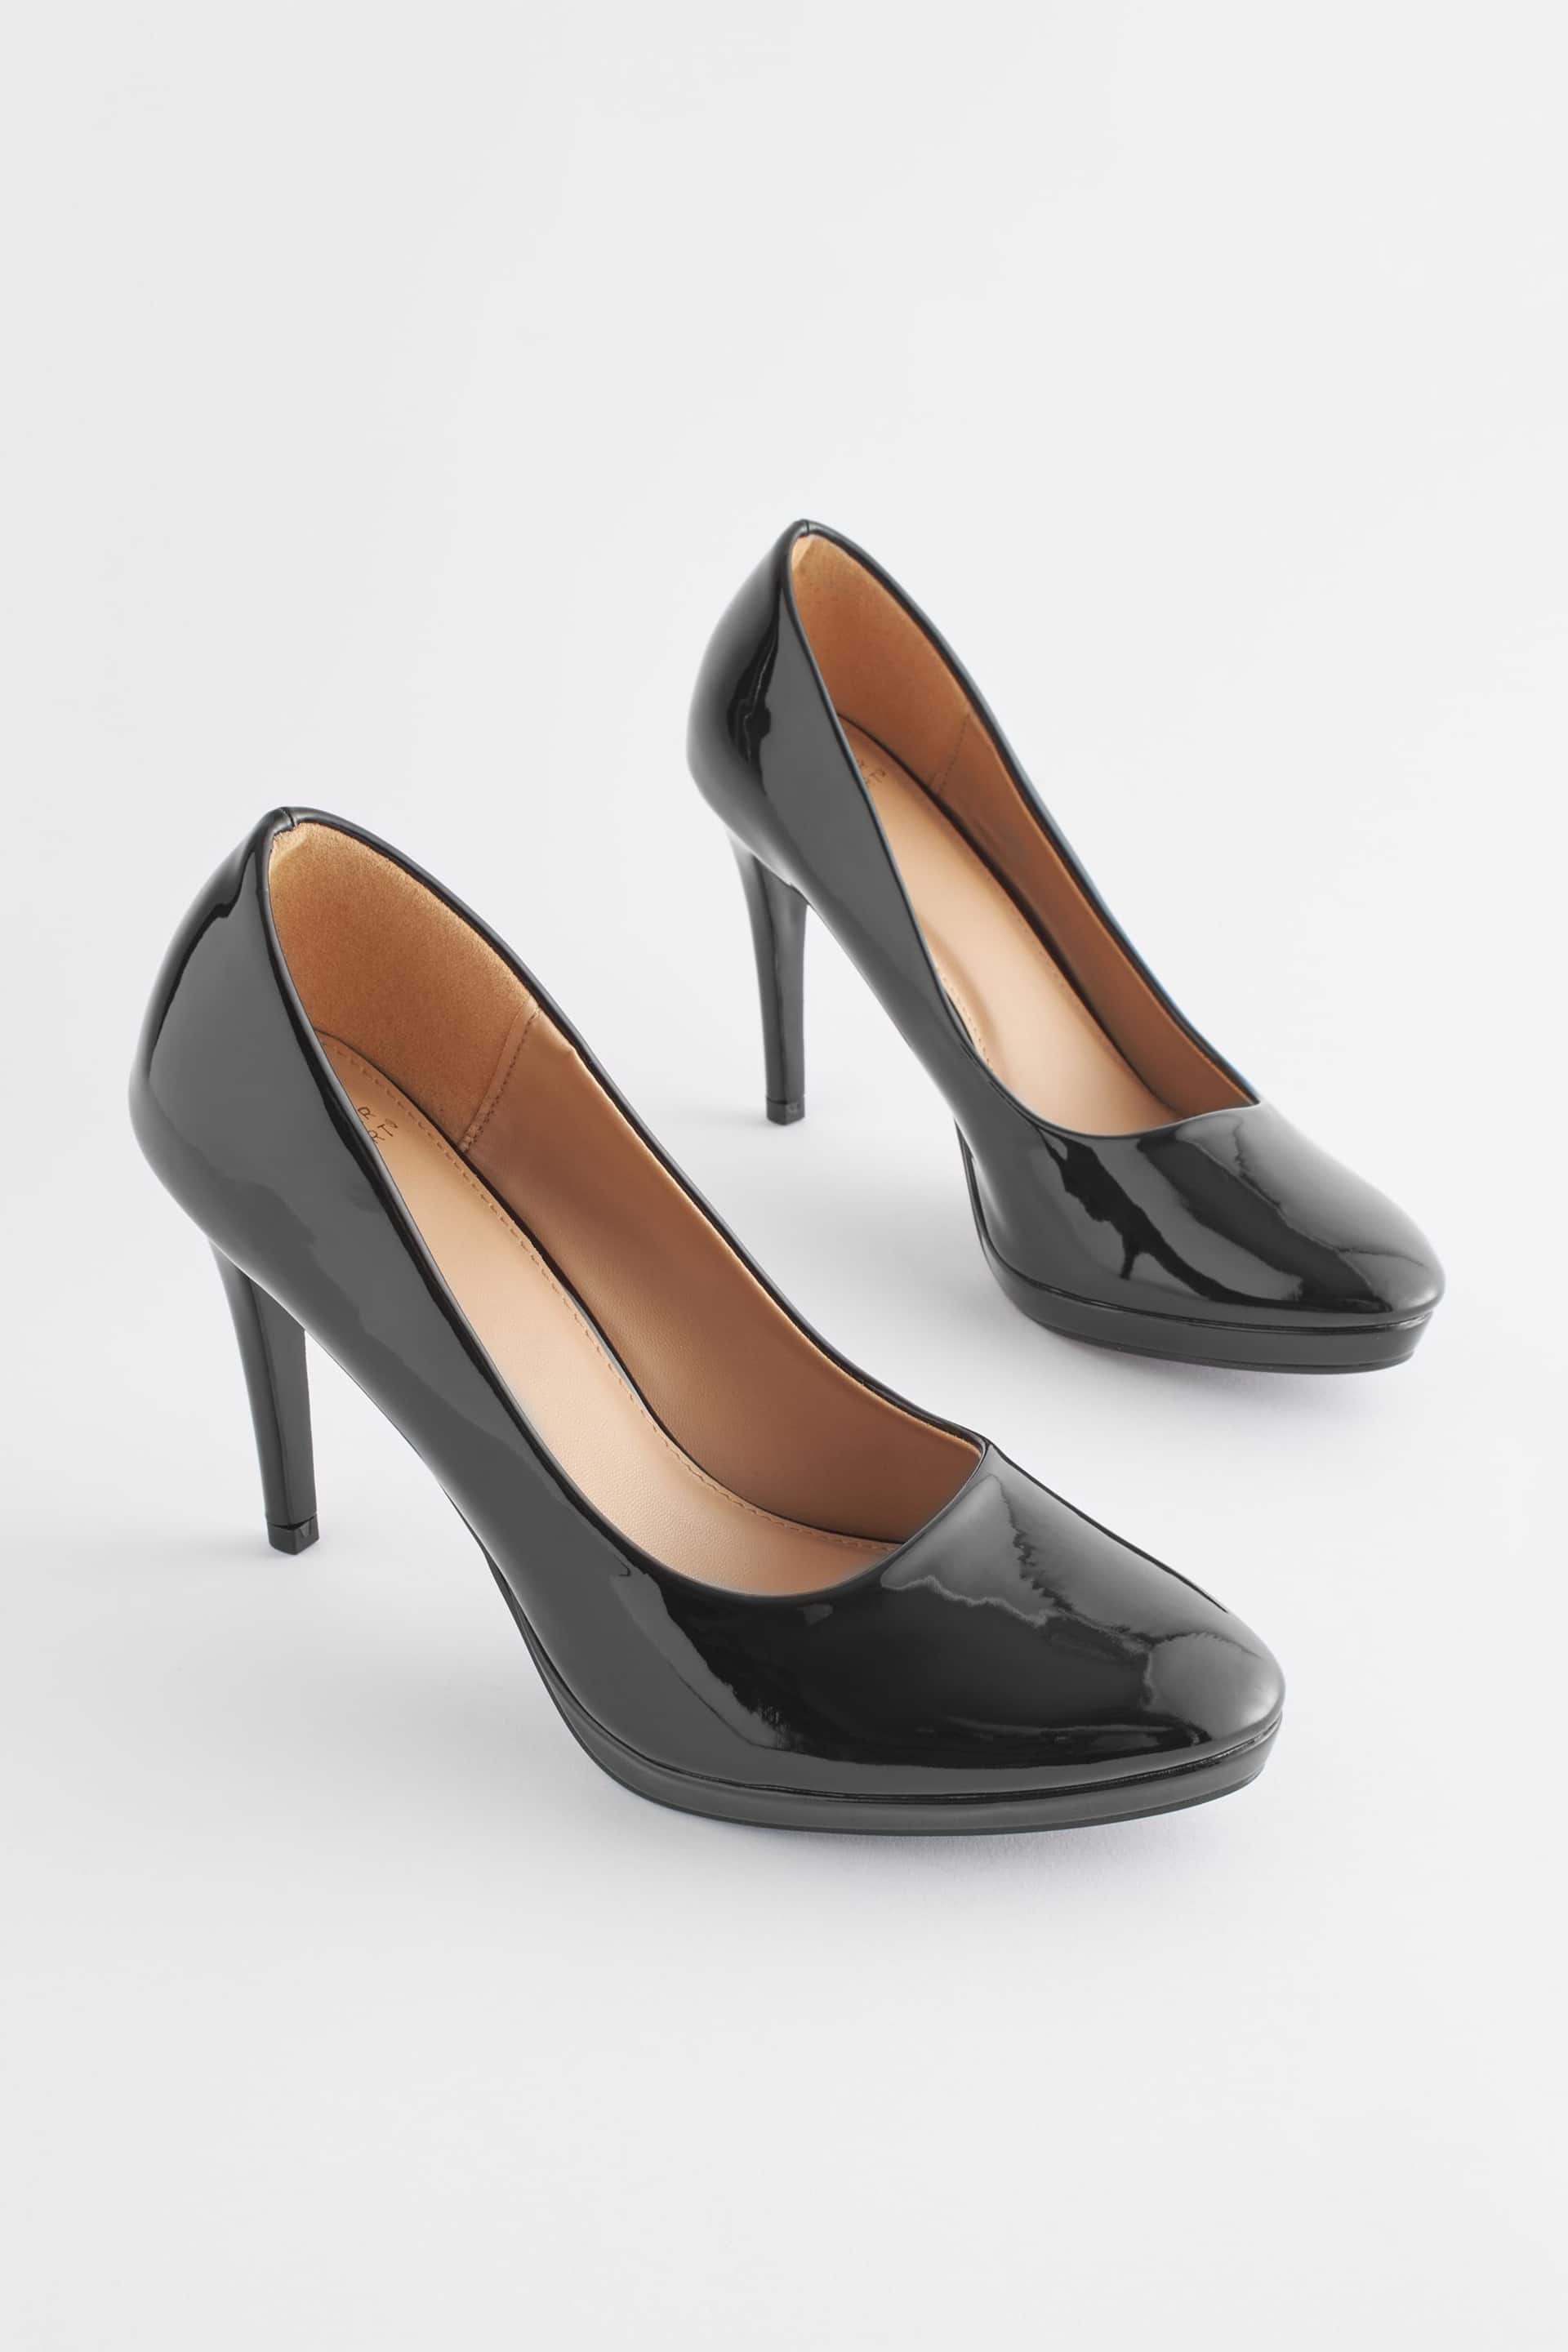 Black Regular/Wide Fit Forever Comfort® Platform Court Shoes - Image 3 of 7